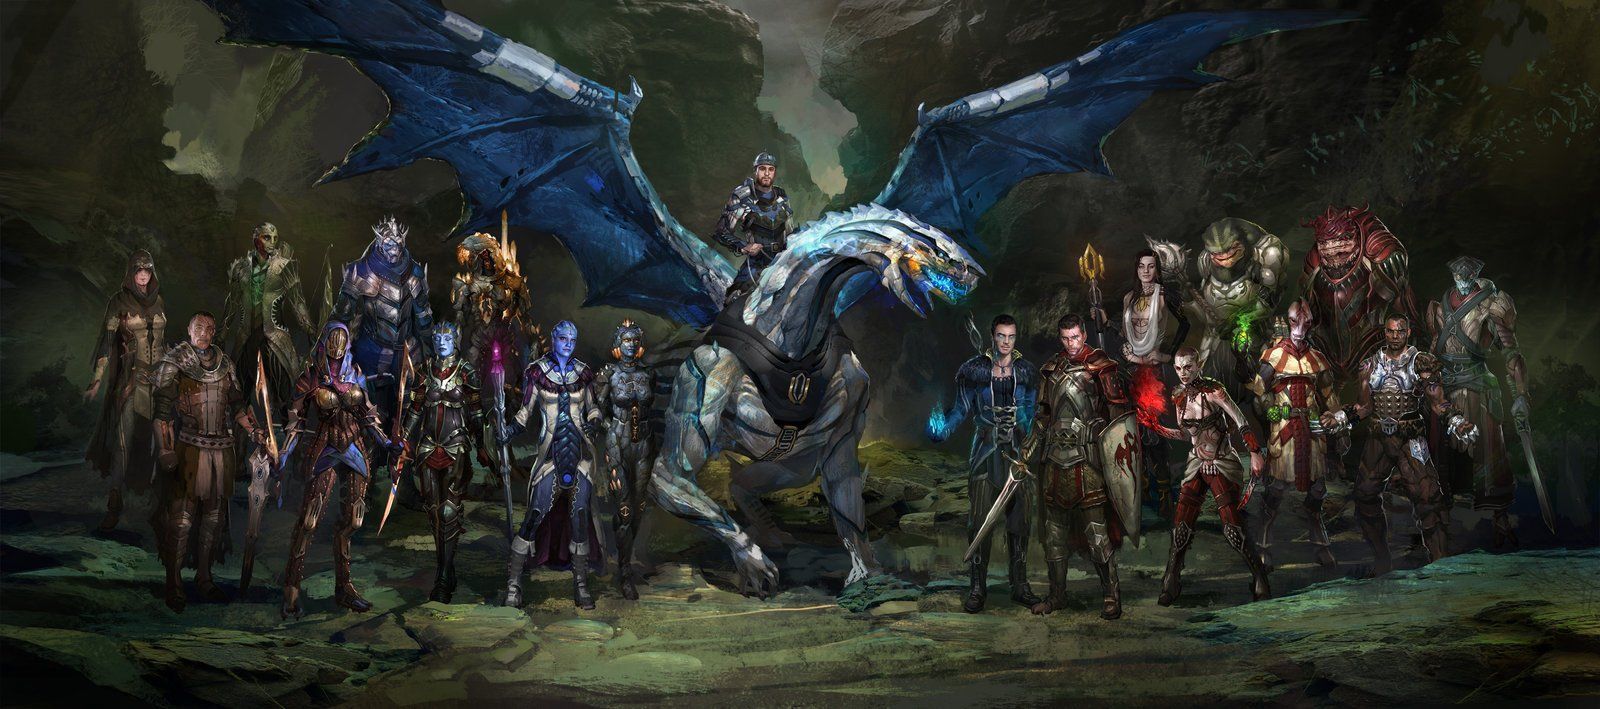 Qualche nuova informazione sul gameplay ed il plot di Dragon Age III